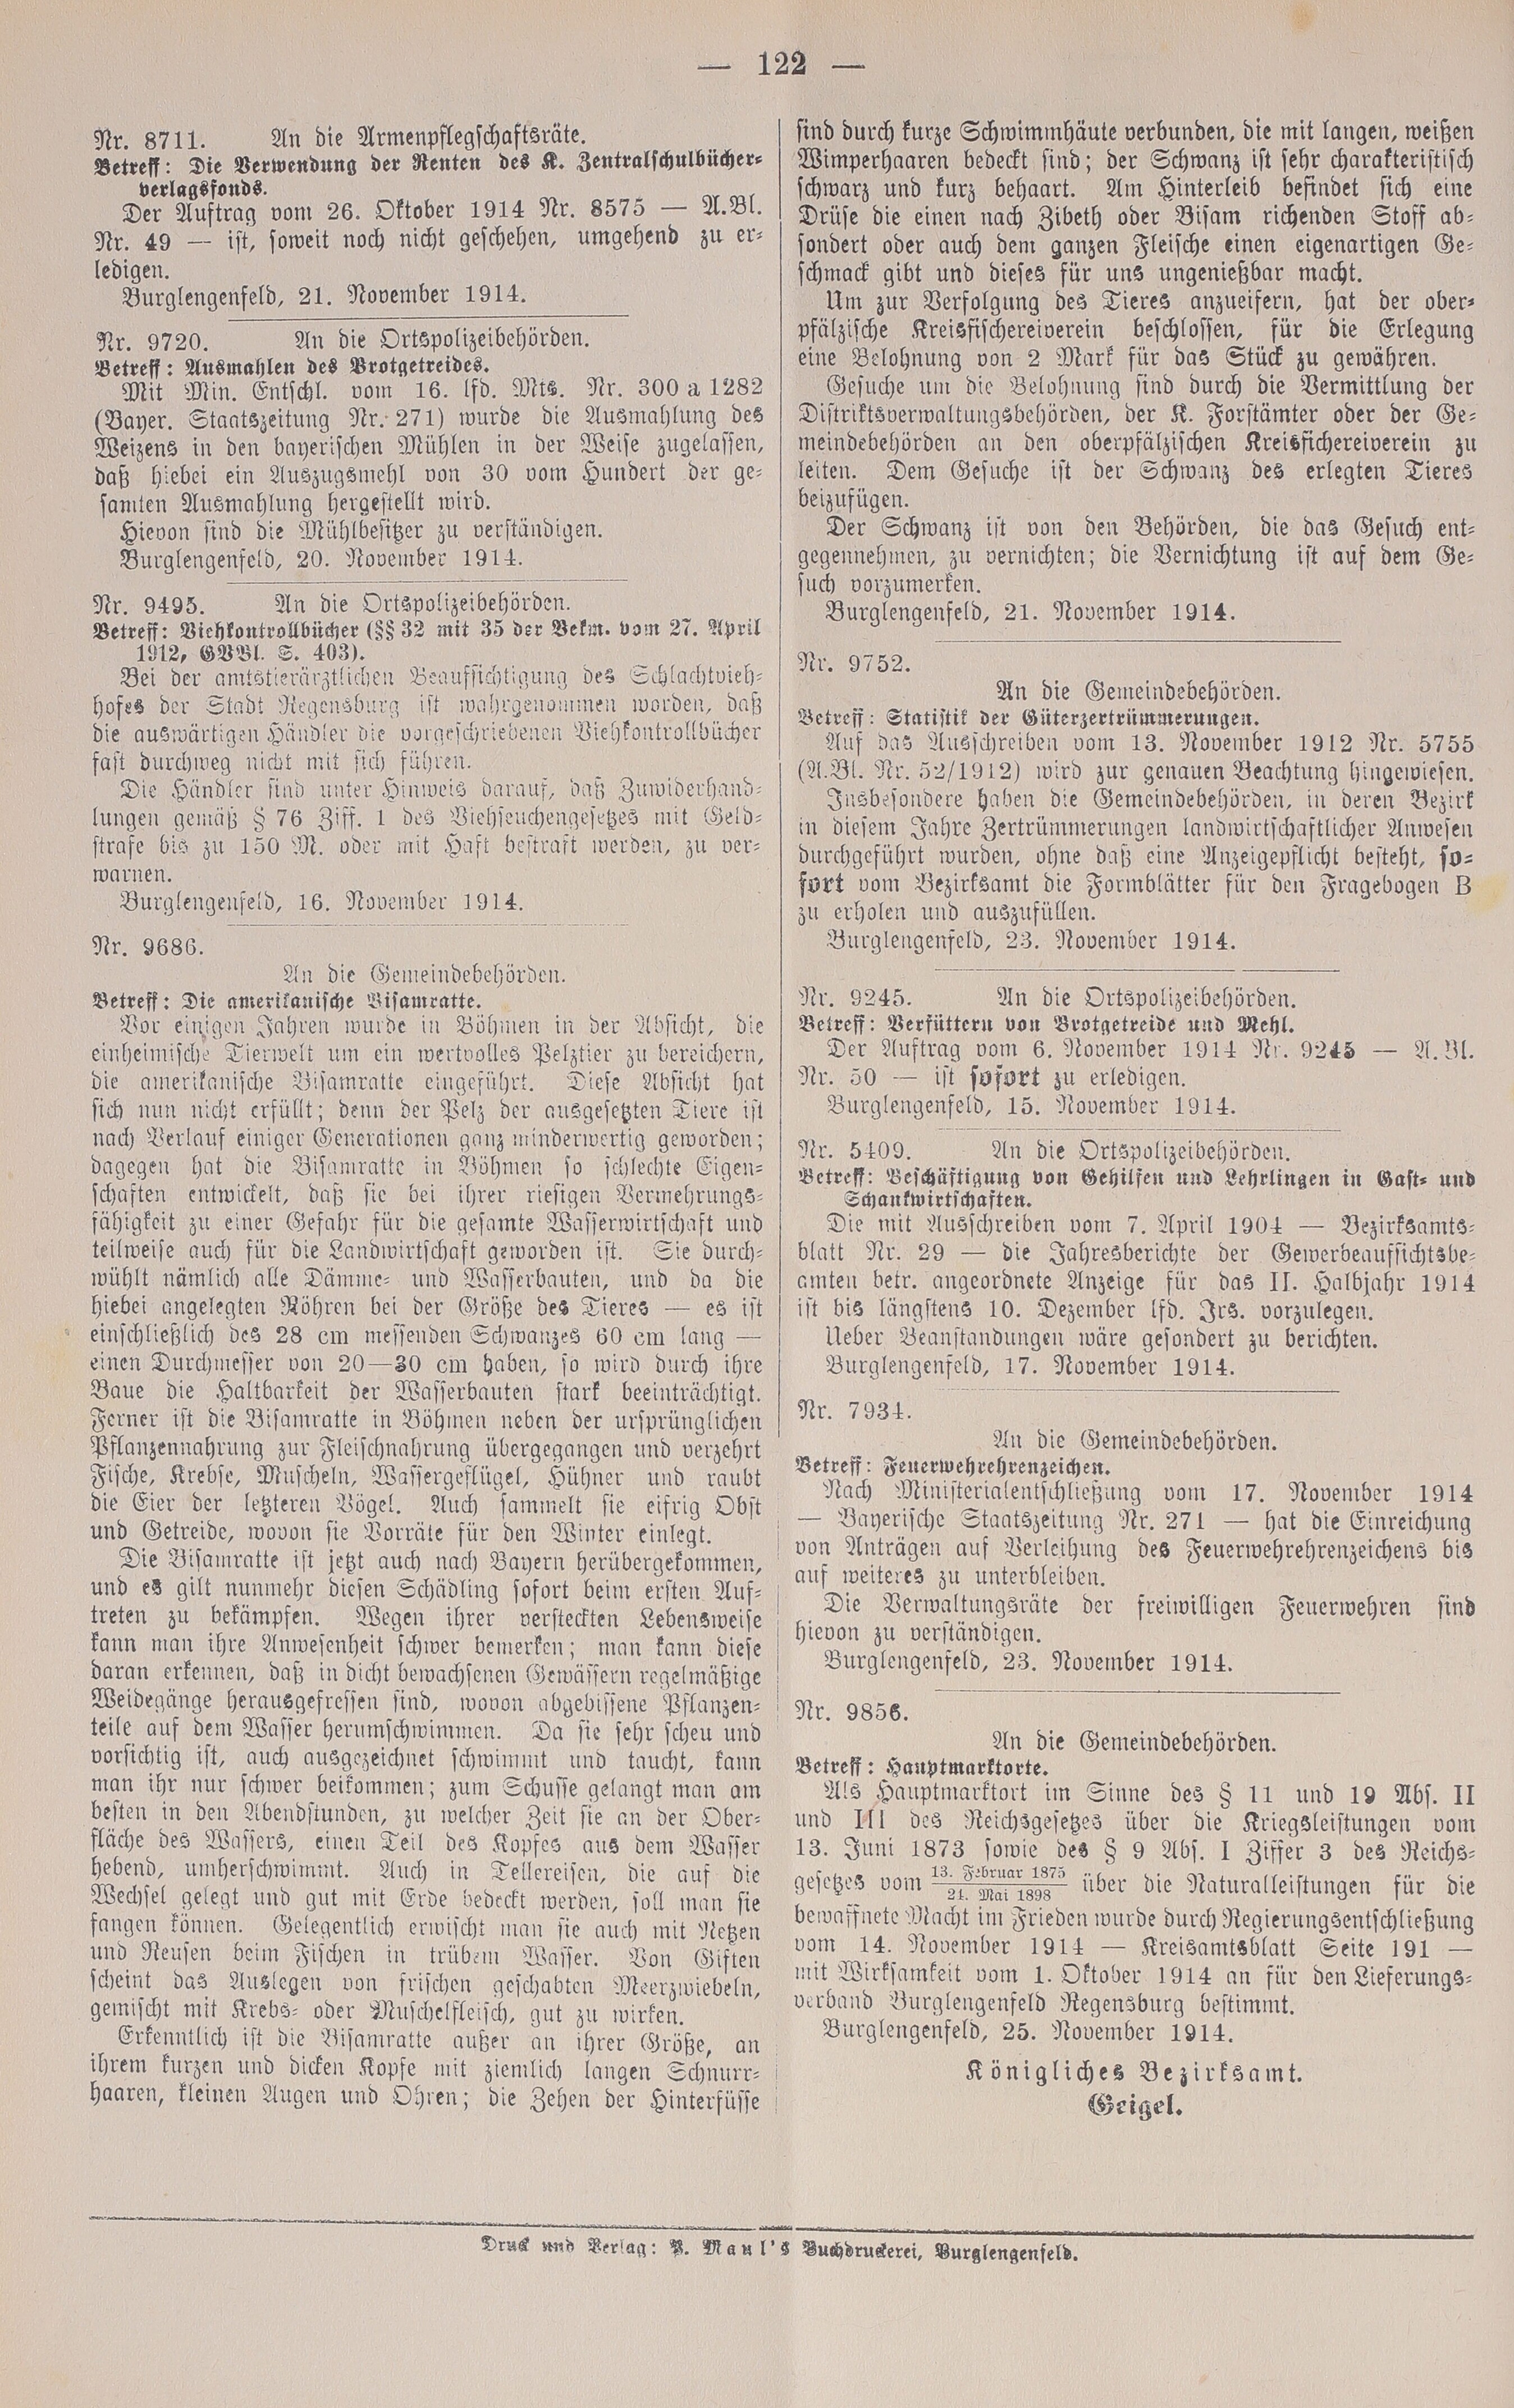 2. amtsblatt-burglengenfeld-1914-11-28-n53_4840